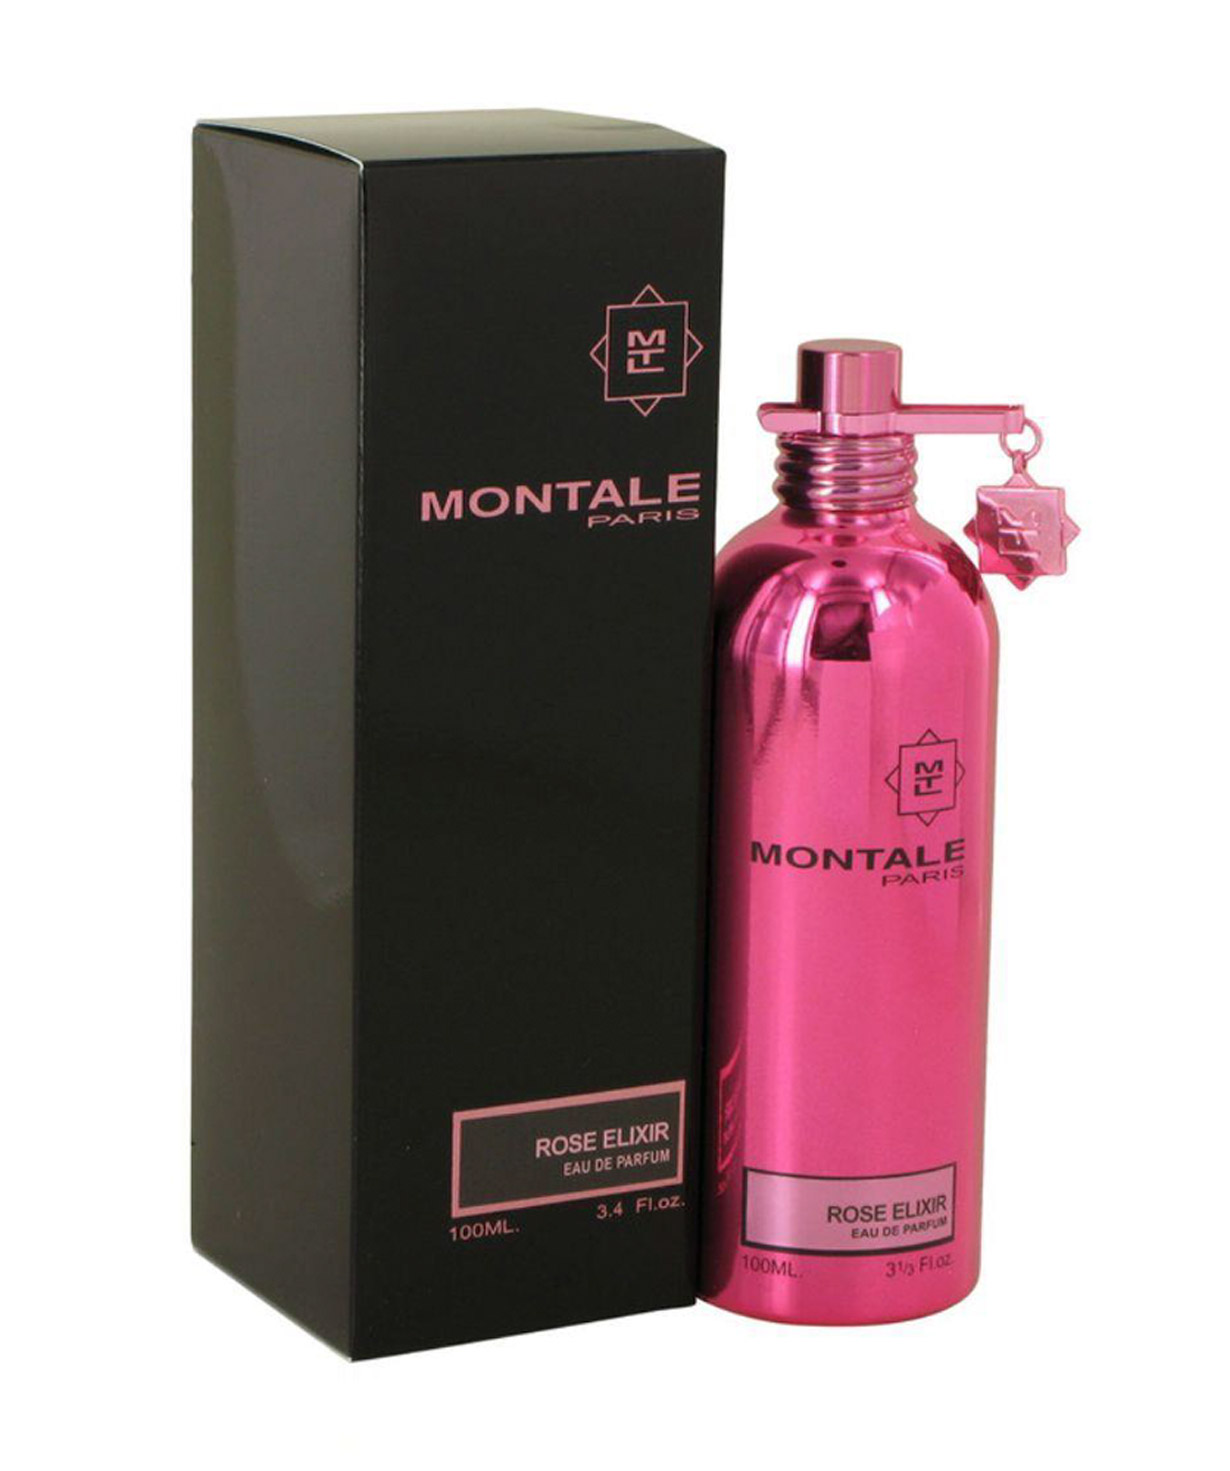 Օծանելիք «Montale Rose Musk» Eau De Parfum կանացի